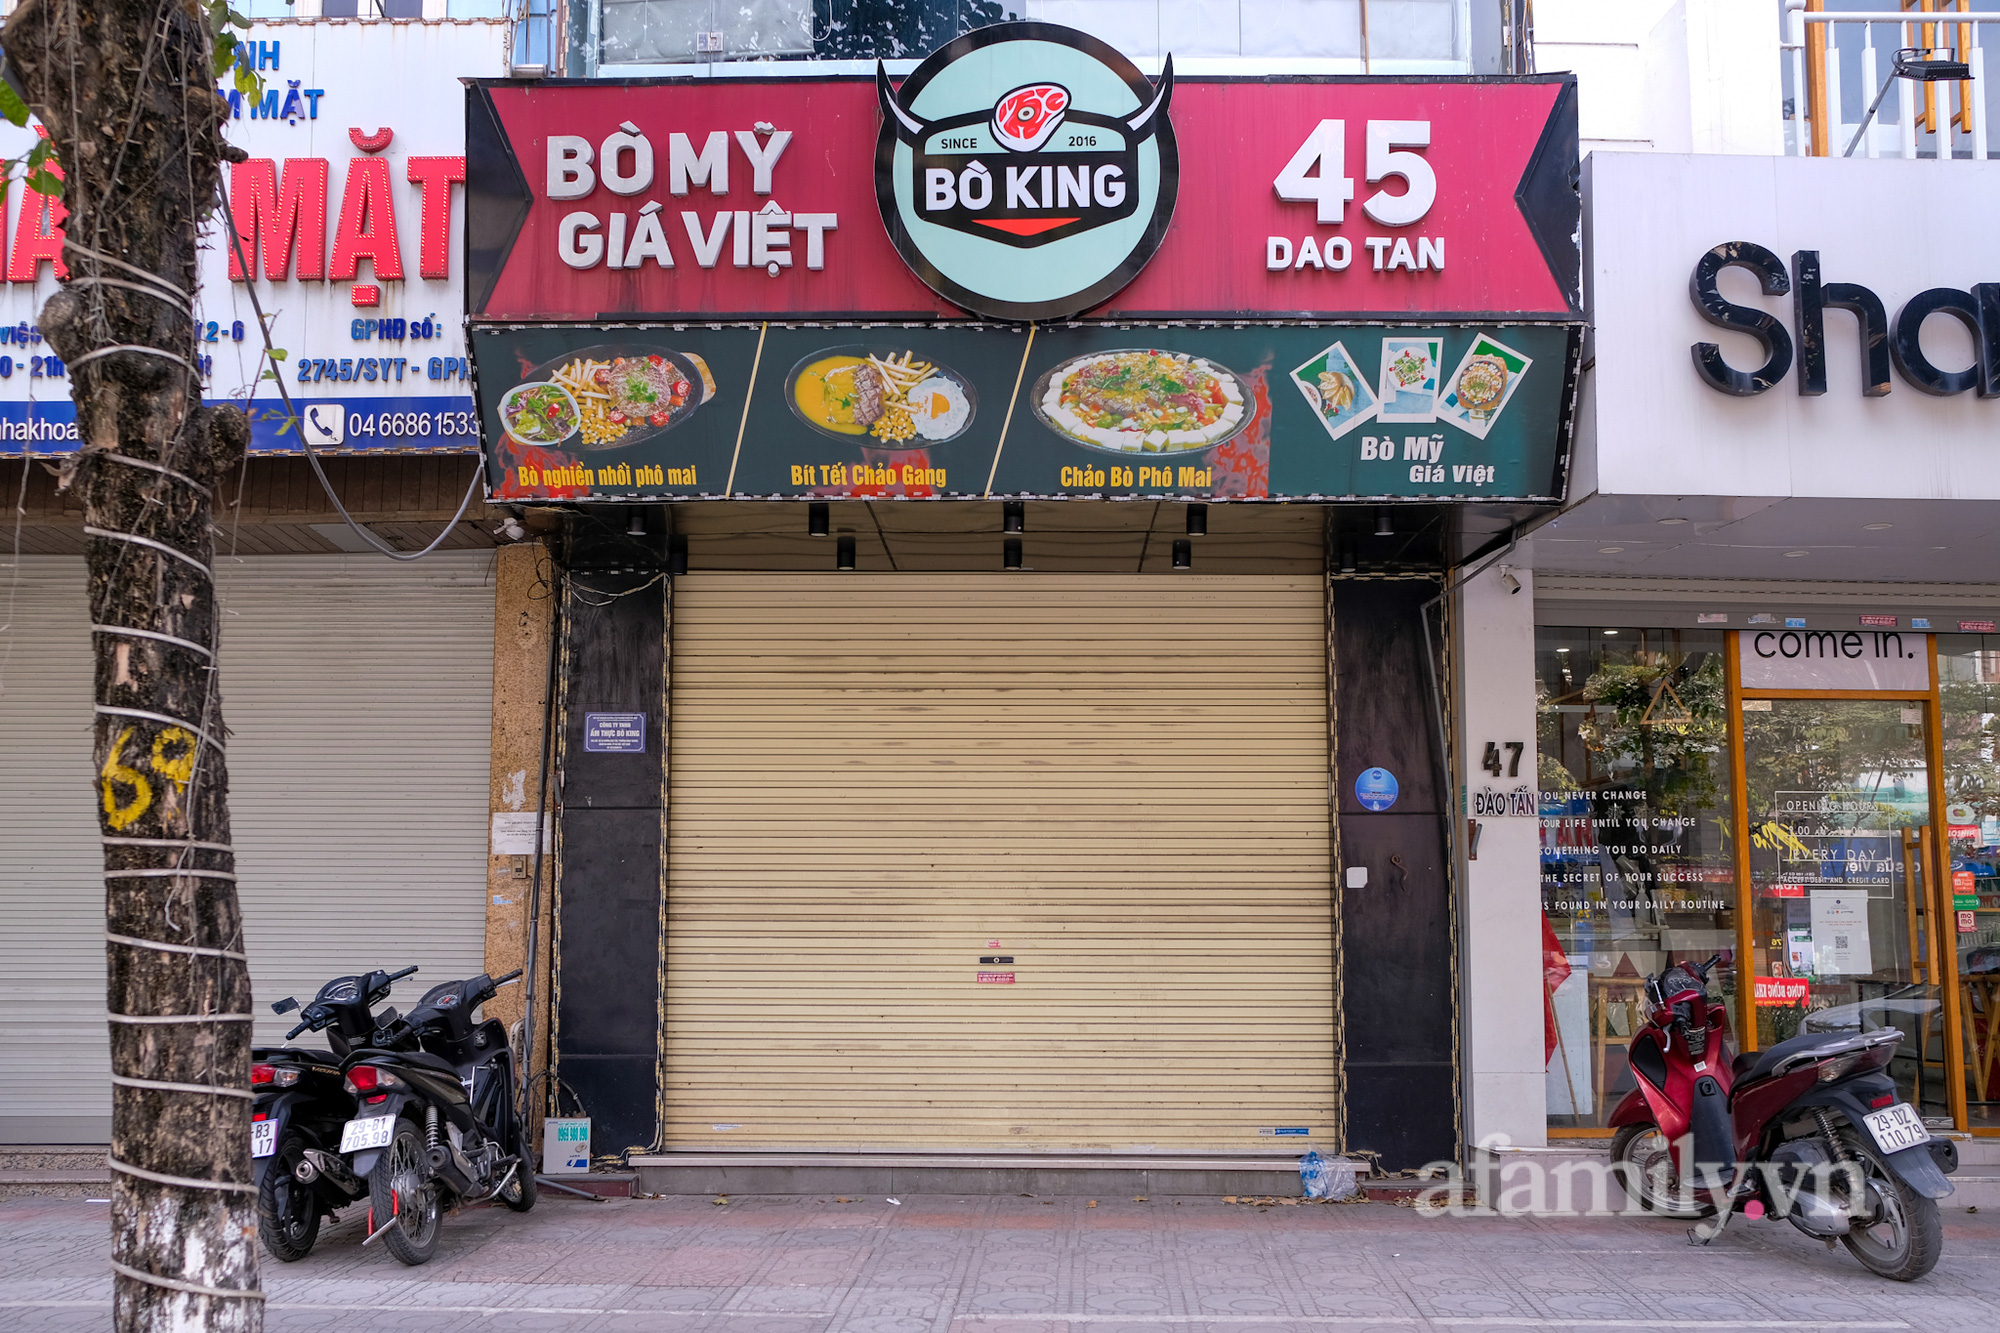 Những địa điểm tìm người liên quan F0 ở Hà Nội: Nơi &quot;cửa đóng then cài&quot;, nơi đón khách nhộn nhịp - Ảnh 2.